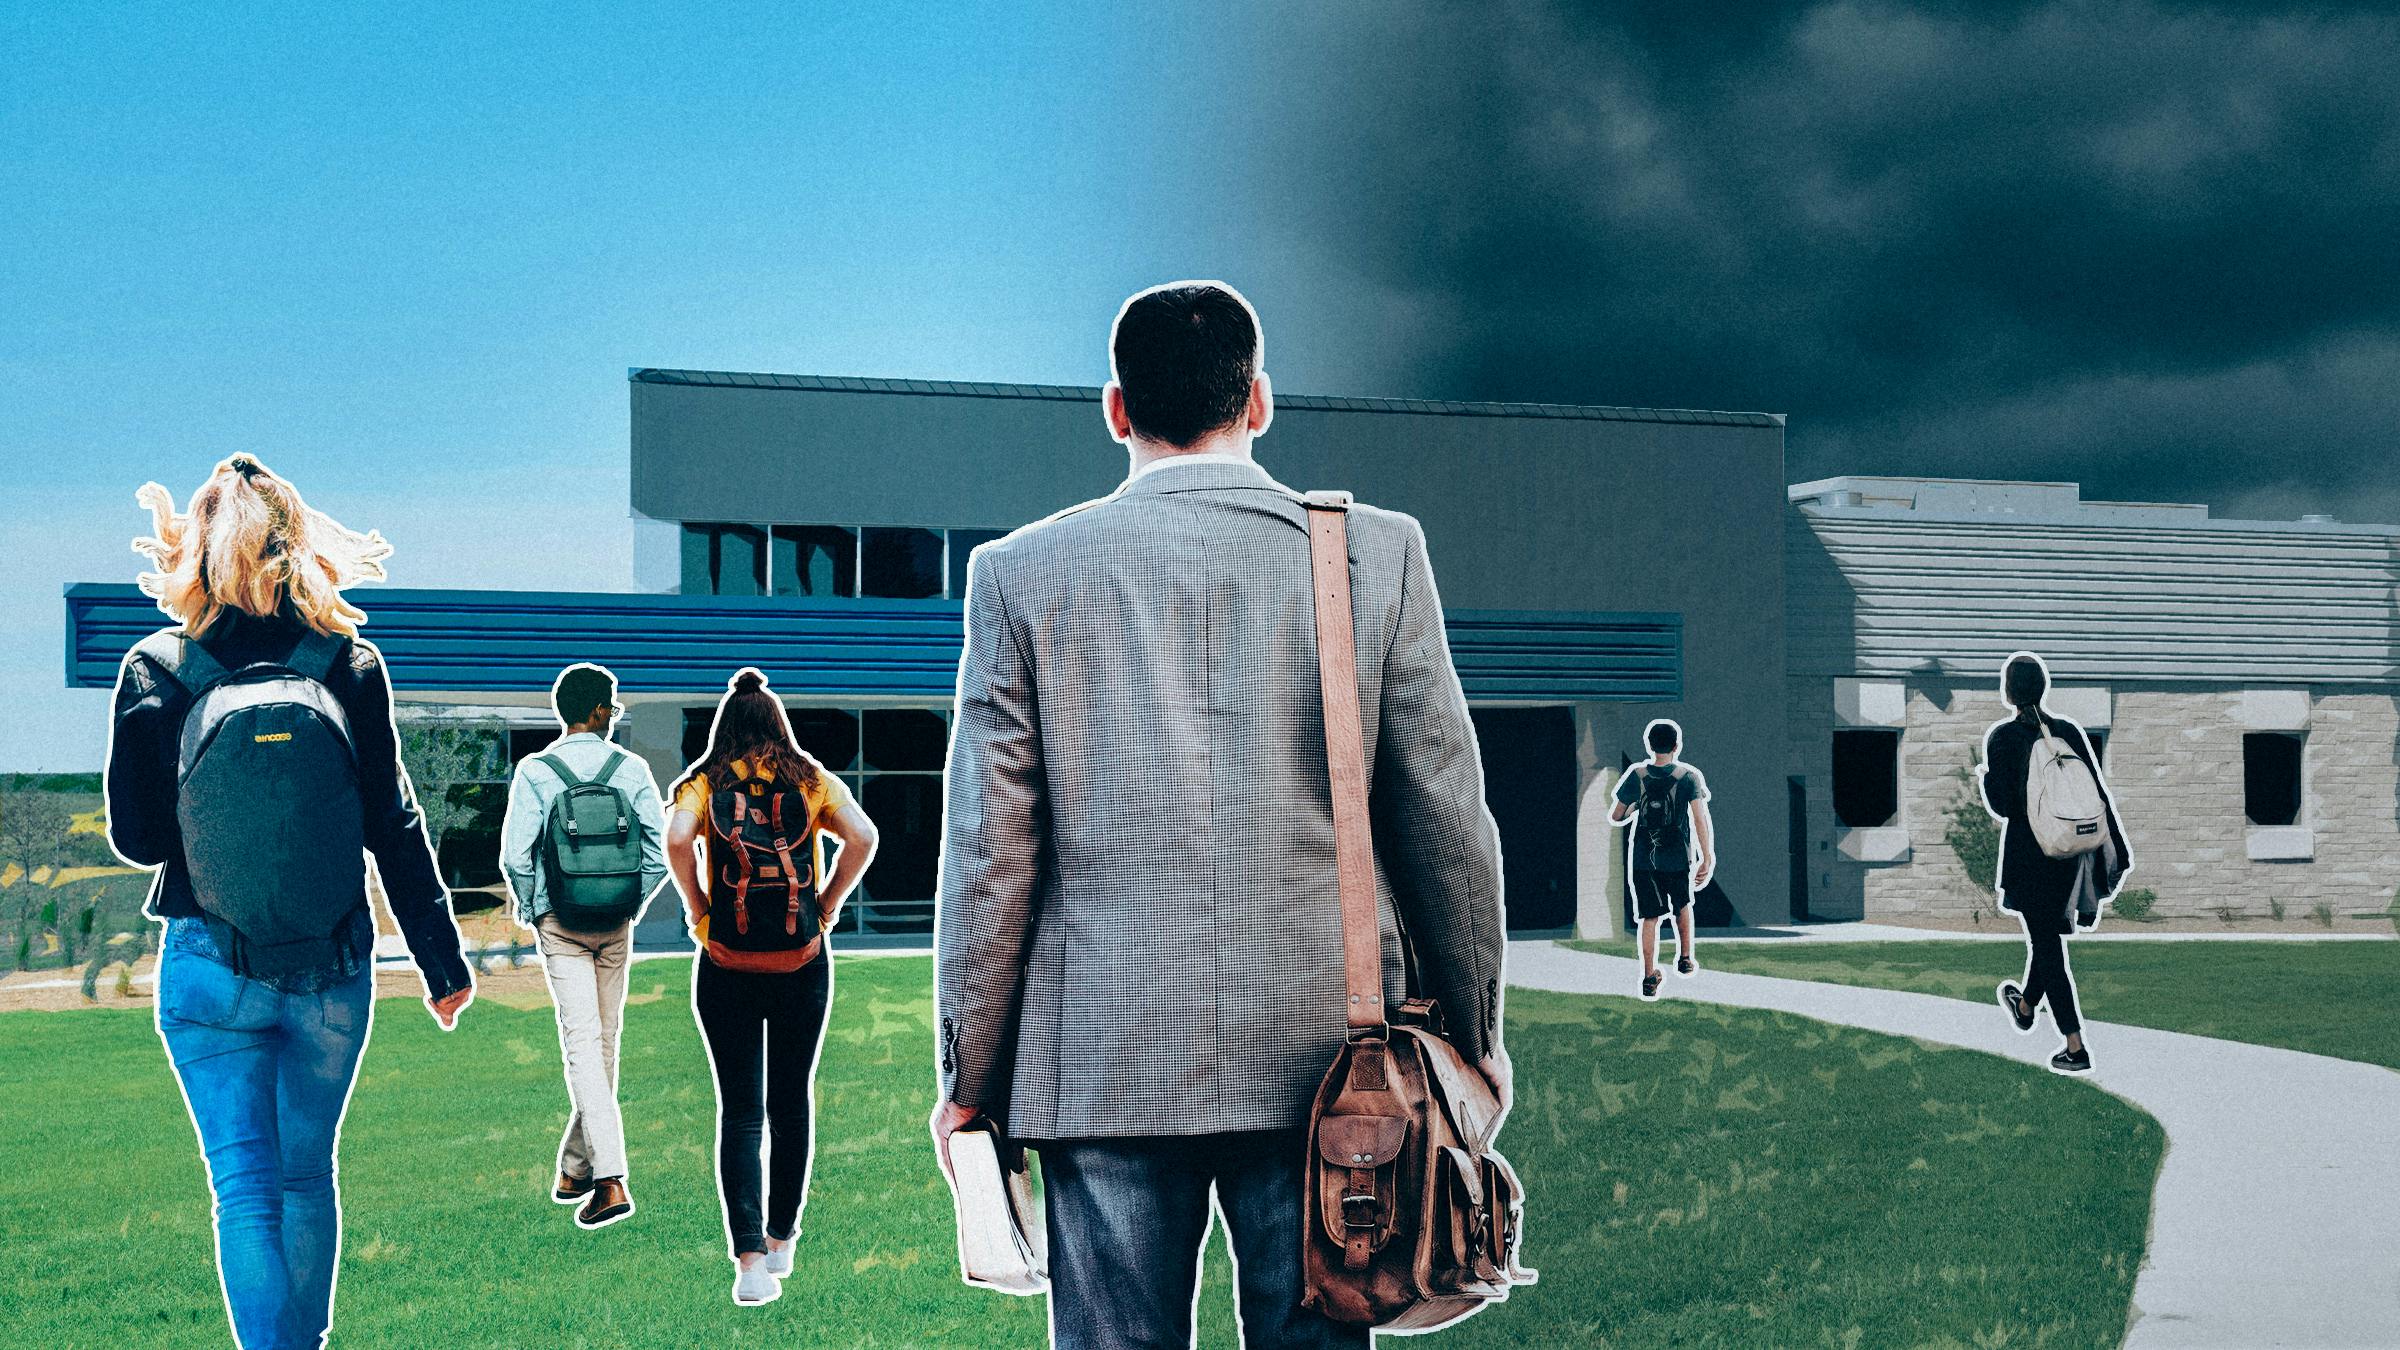 Ein Lehrer steht vor einer Schule. Er trägt eine Umhängetasche und hält ein Buch in der Hand. Schüler:innen laufen zum Gebäude. Links scheint die Sonne, rechts hängen Wolken am Himmel.